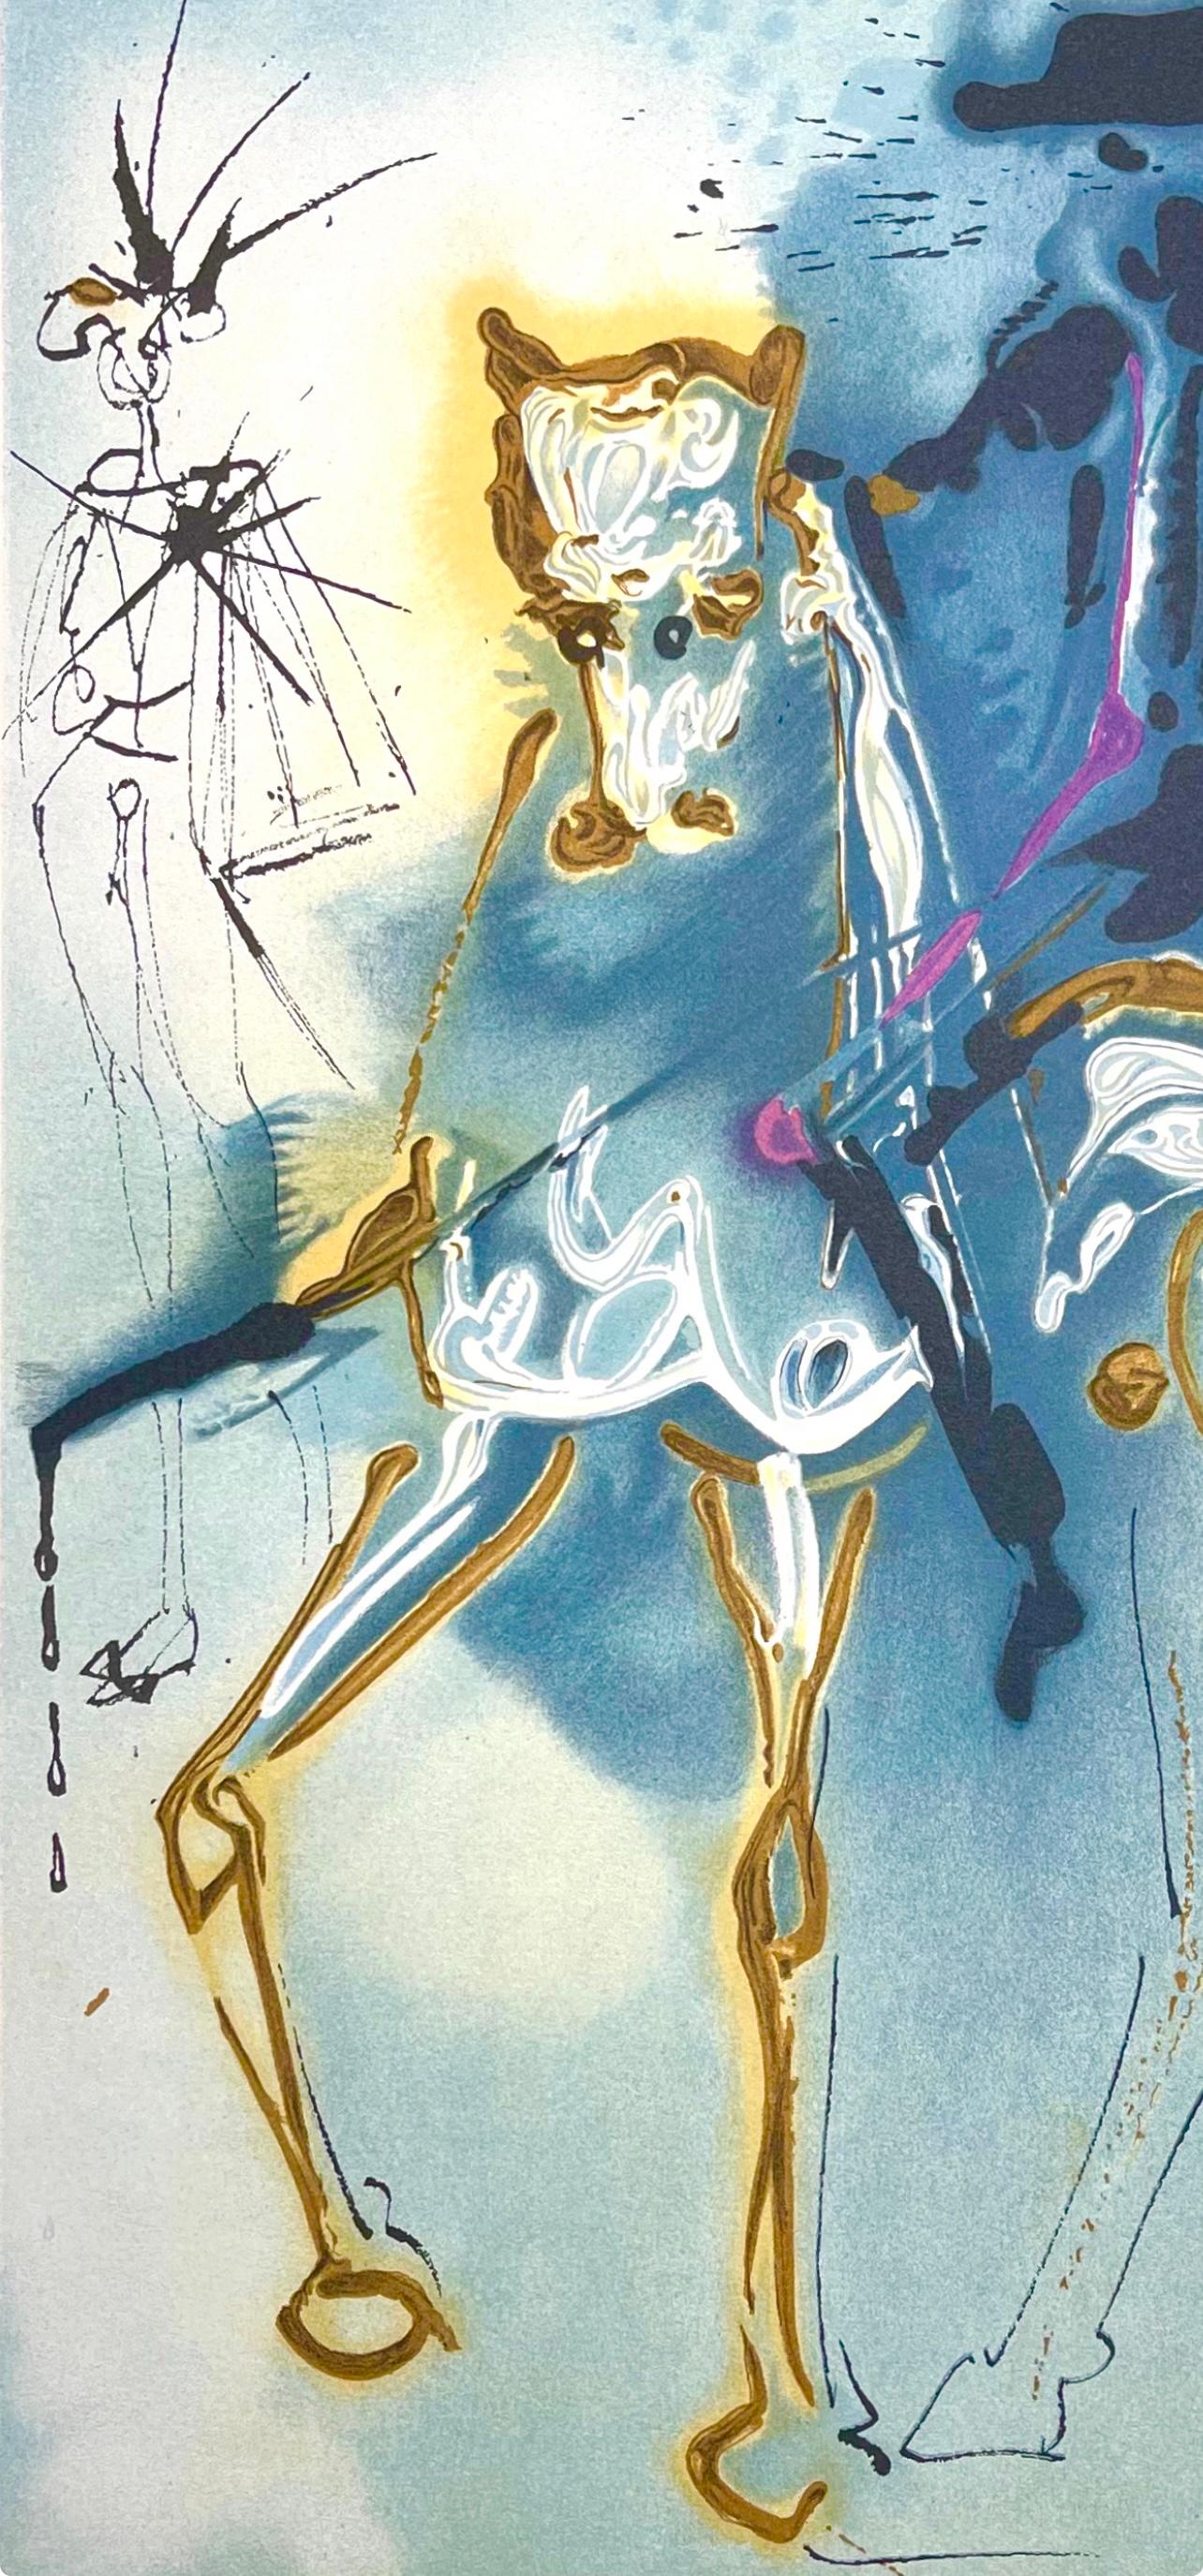 Dalí, Picador, Les Chevaux de Dali (nach) – Print von Salvador Dalí